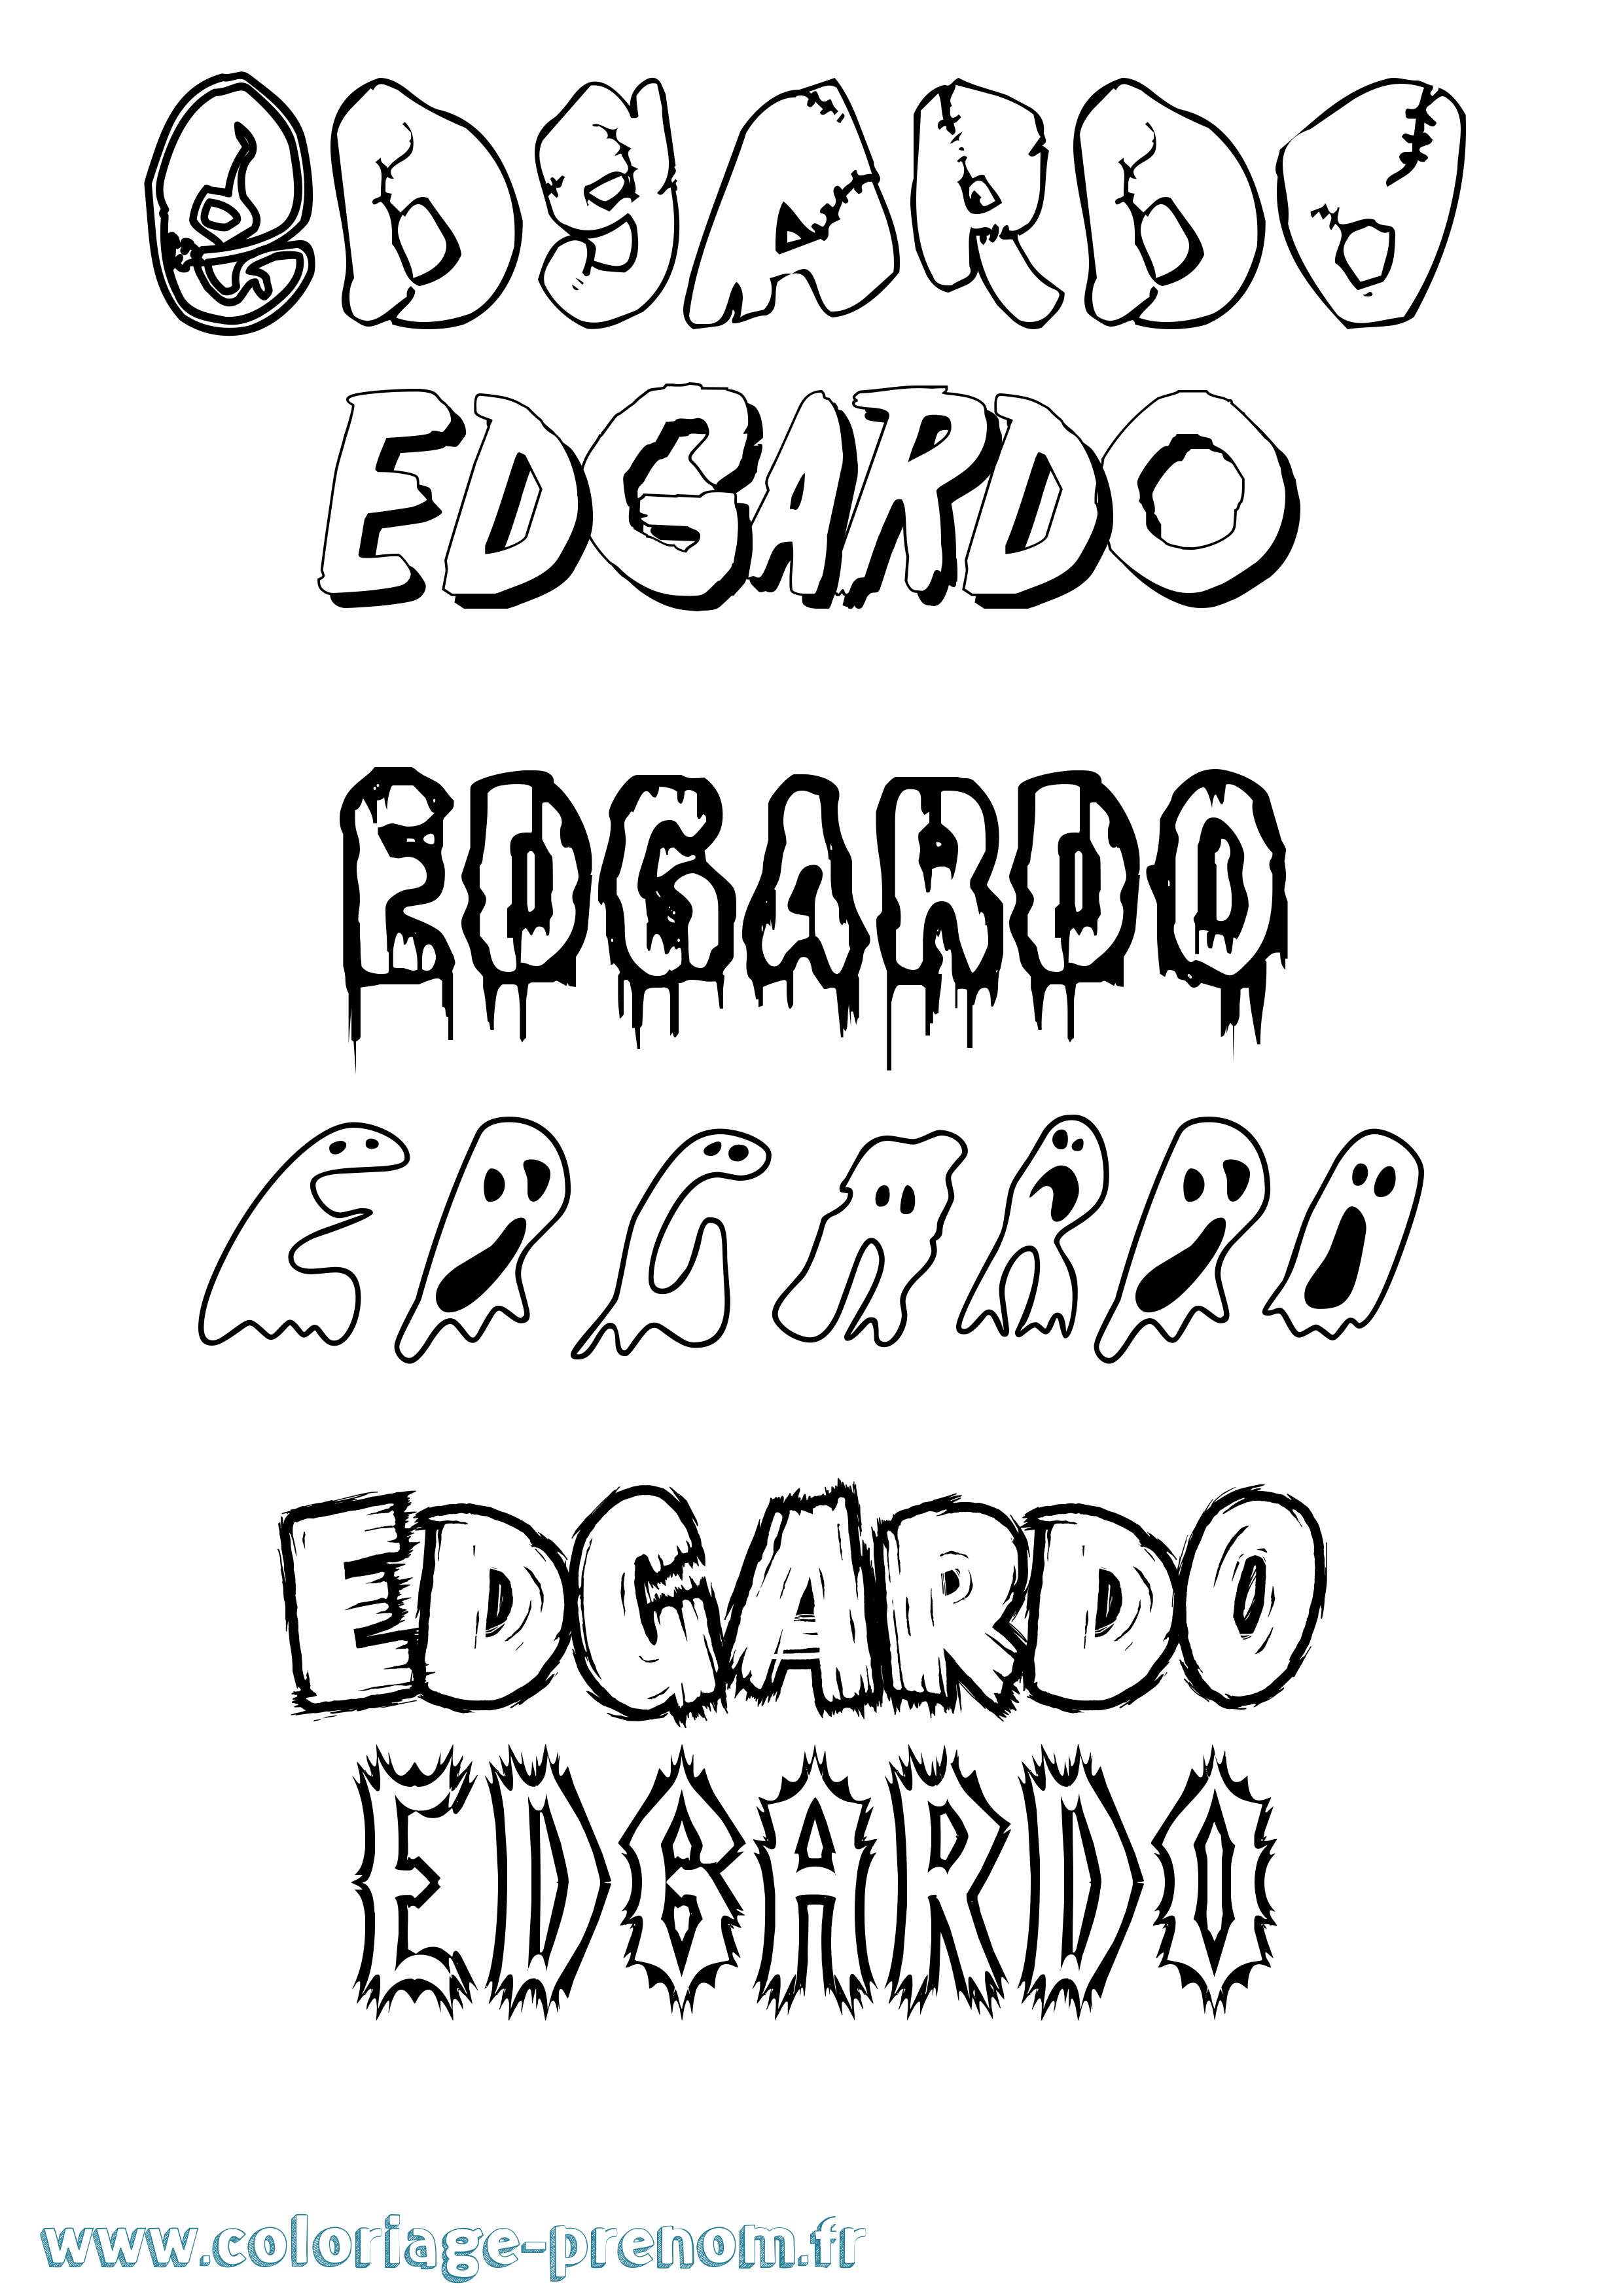 Coloriage prénom Edgardo Frisson